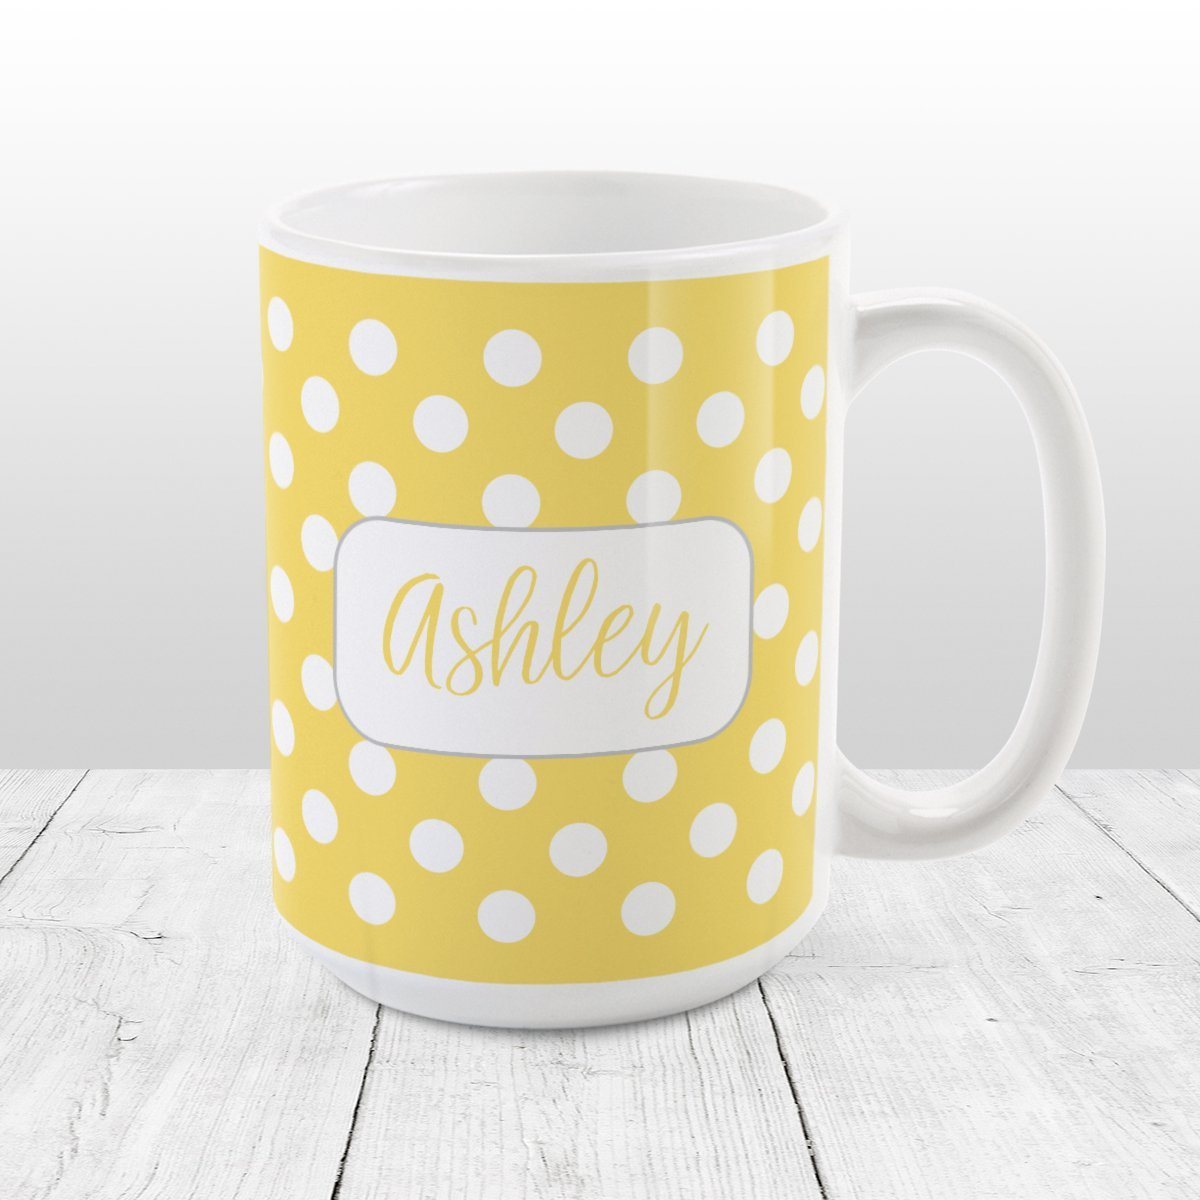 Personalized Yellow Polka Dot Mug at Amy's Coffee Mugs